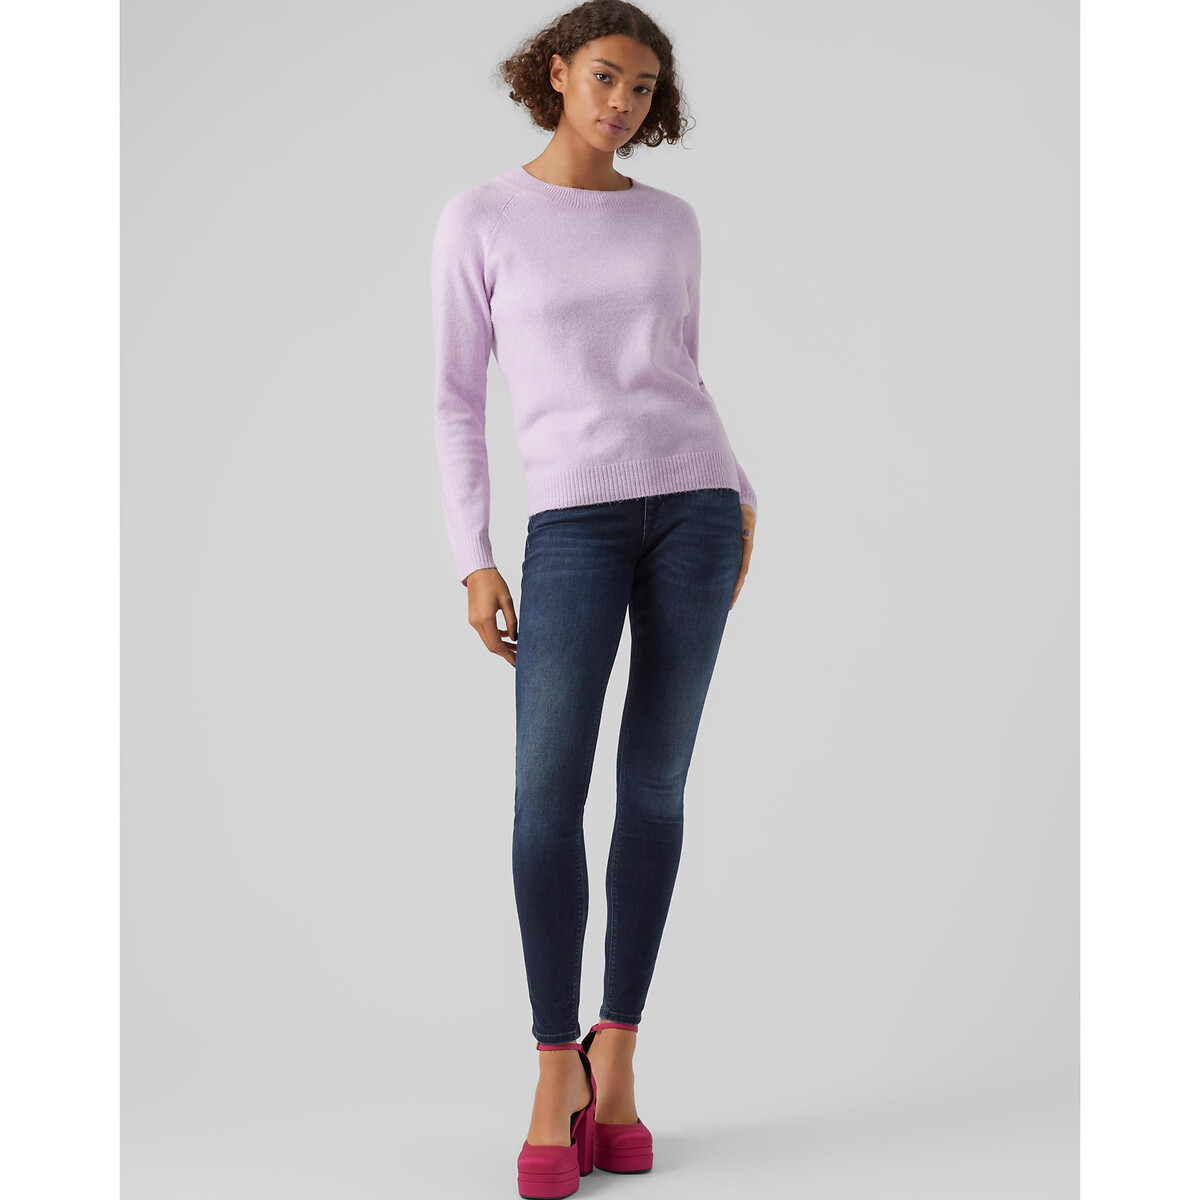 Пуловер Из пышного трикотажа M розовый LaRedoute, размер M - фото 3